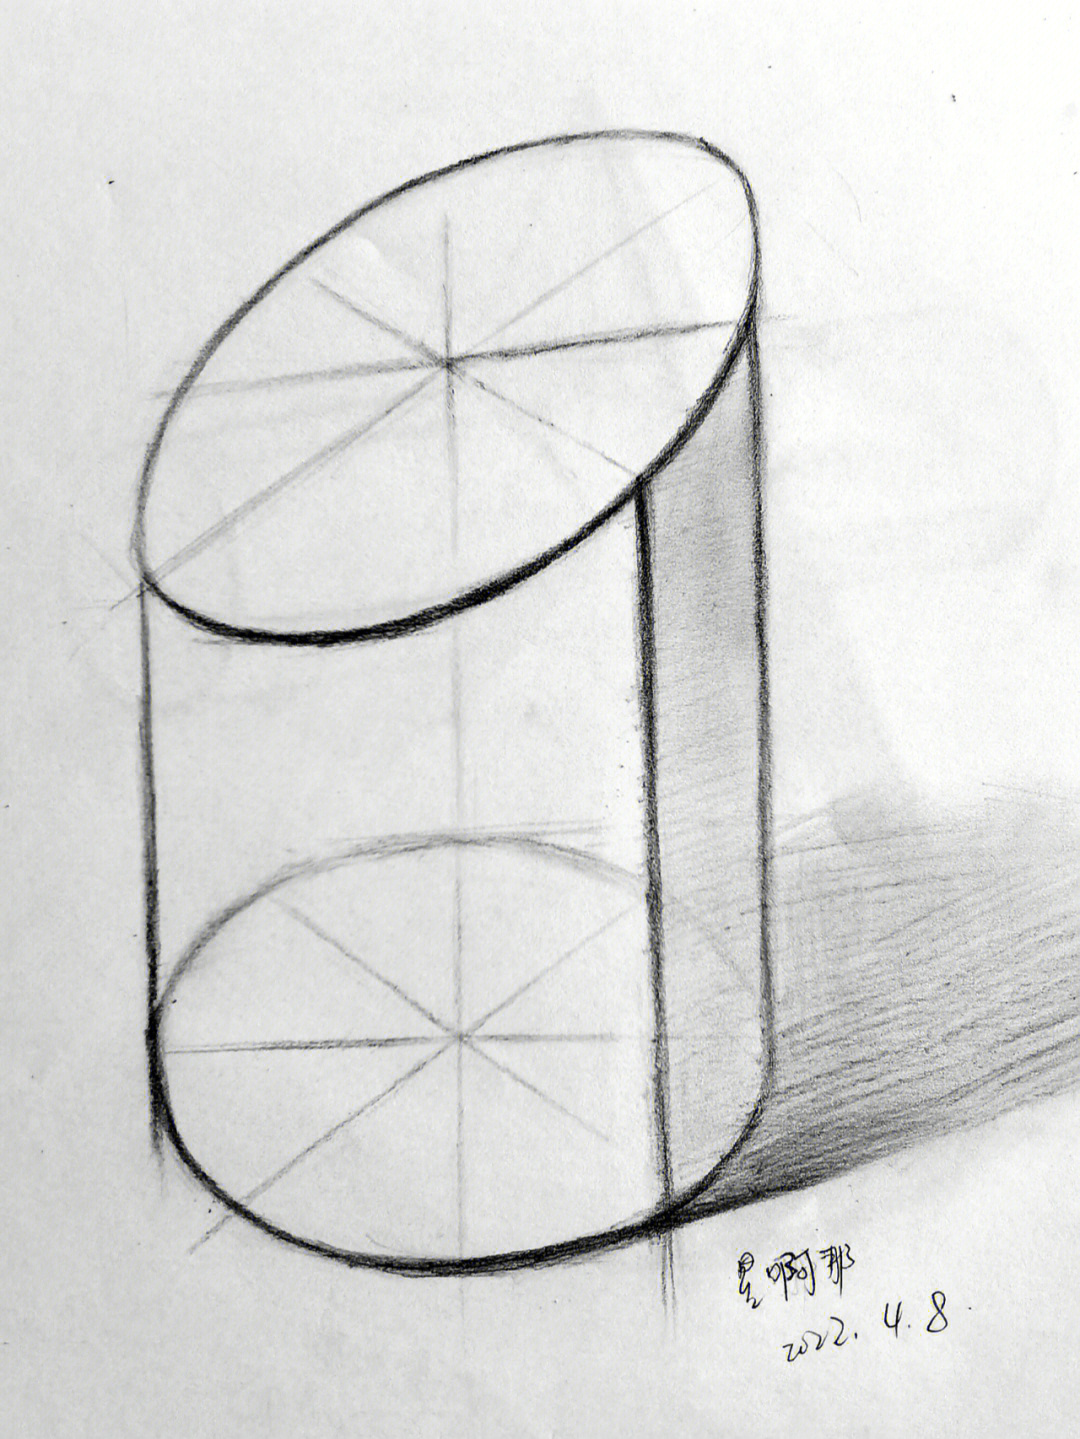 自学画画几何单体结构圆柱斜面体